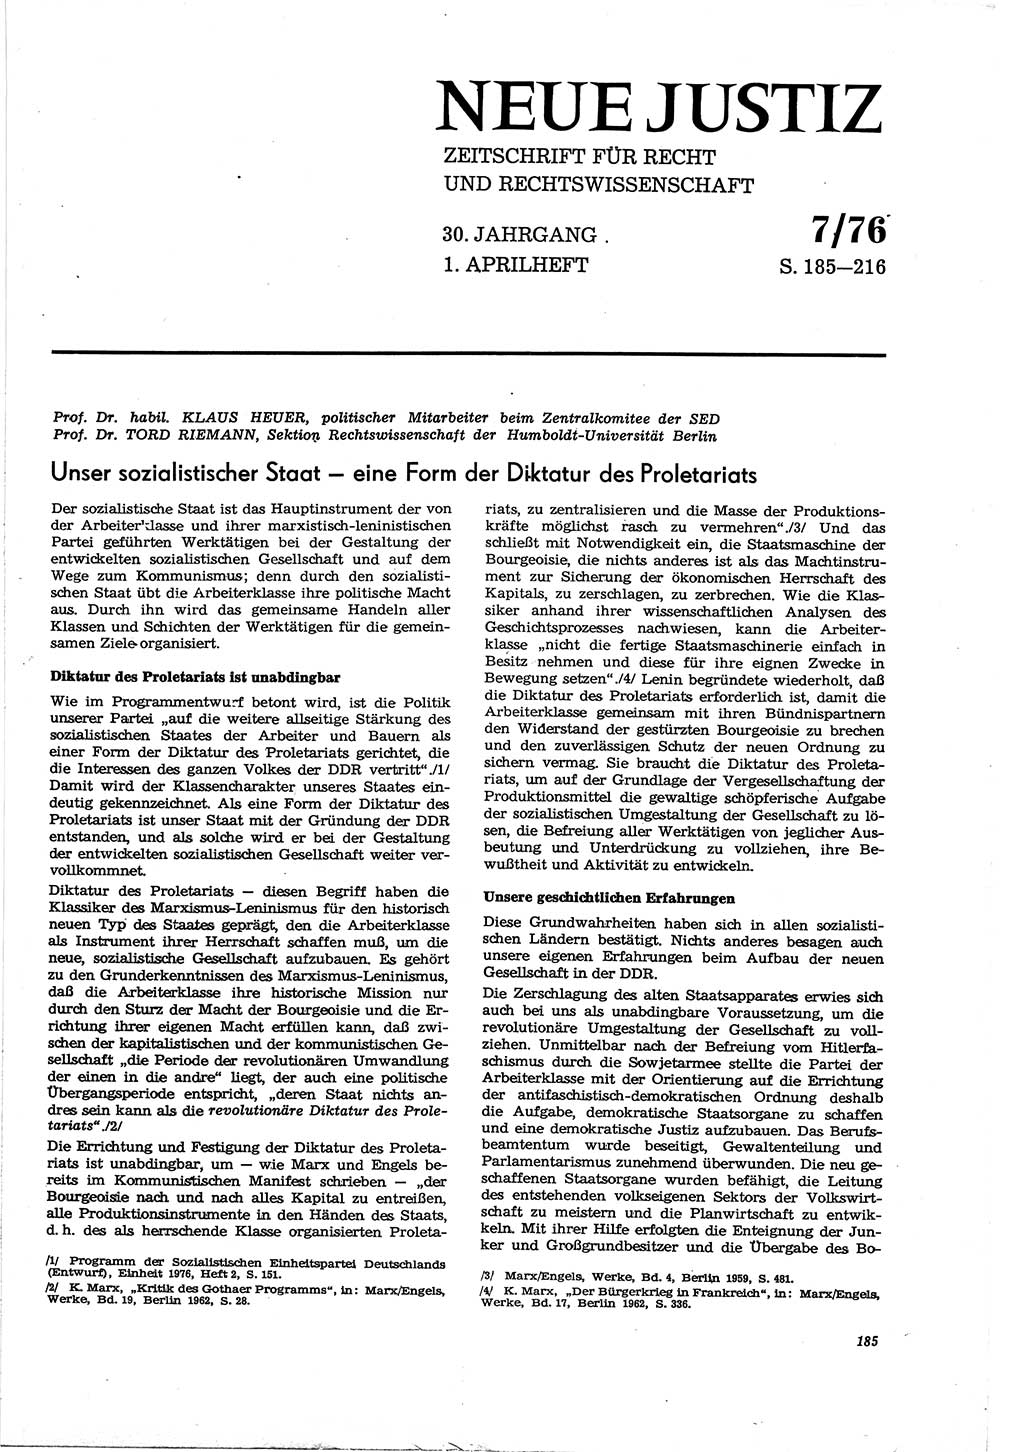 Neue Justiz (NJ), Zeitschrift für Recht und Rechtswissenschaft [Deutsche Demokratische Republik (DDR)], 30. Jahrgang 1976, Seite 185 (NJ DDR 1976, S. 185)